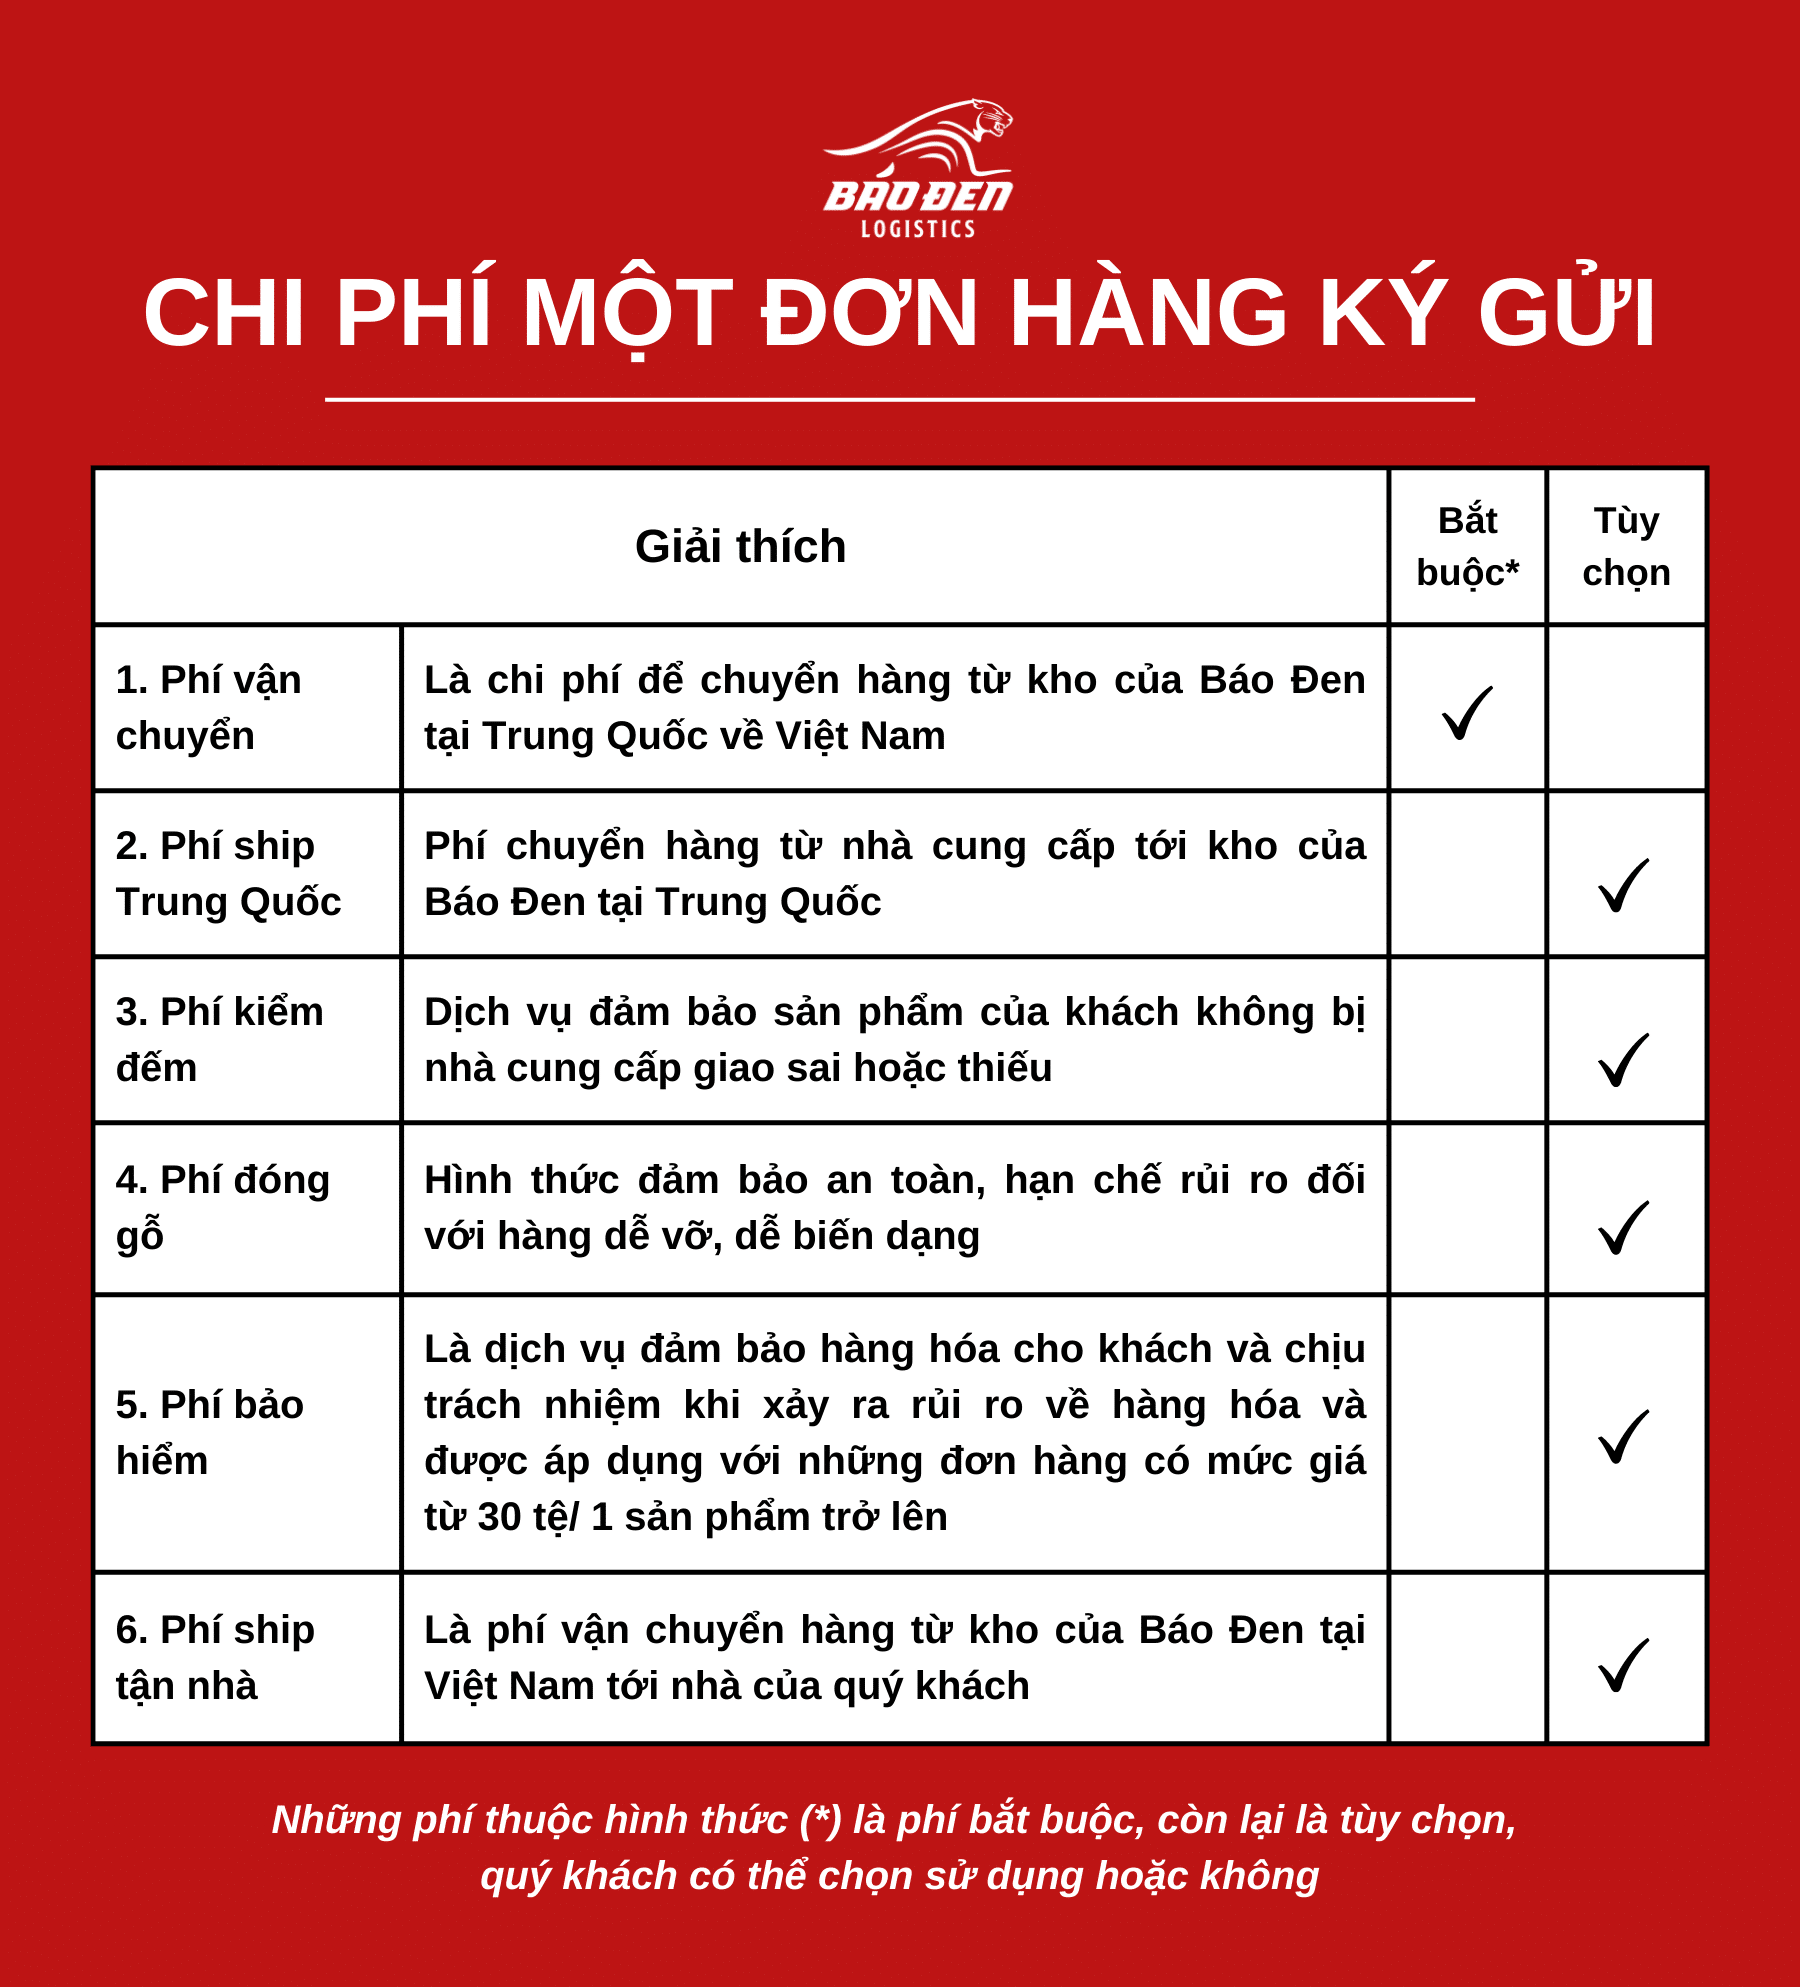 Chi phi mot don hang ky gui 1